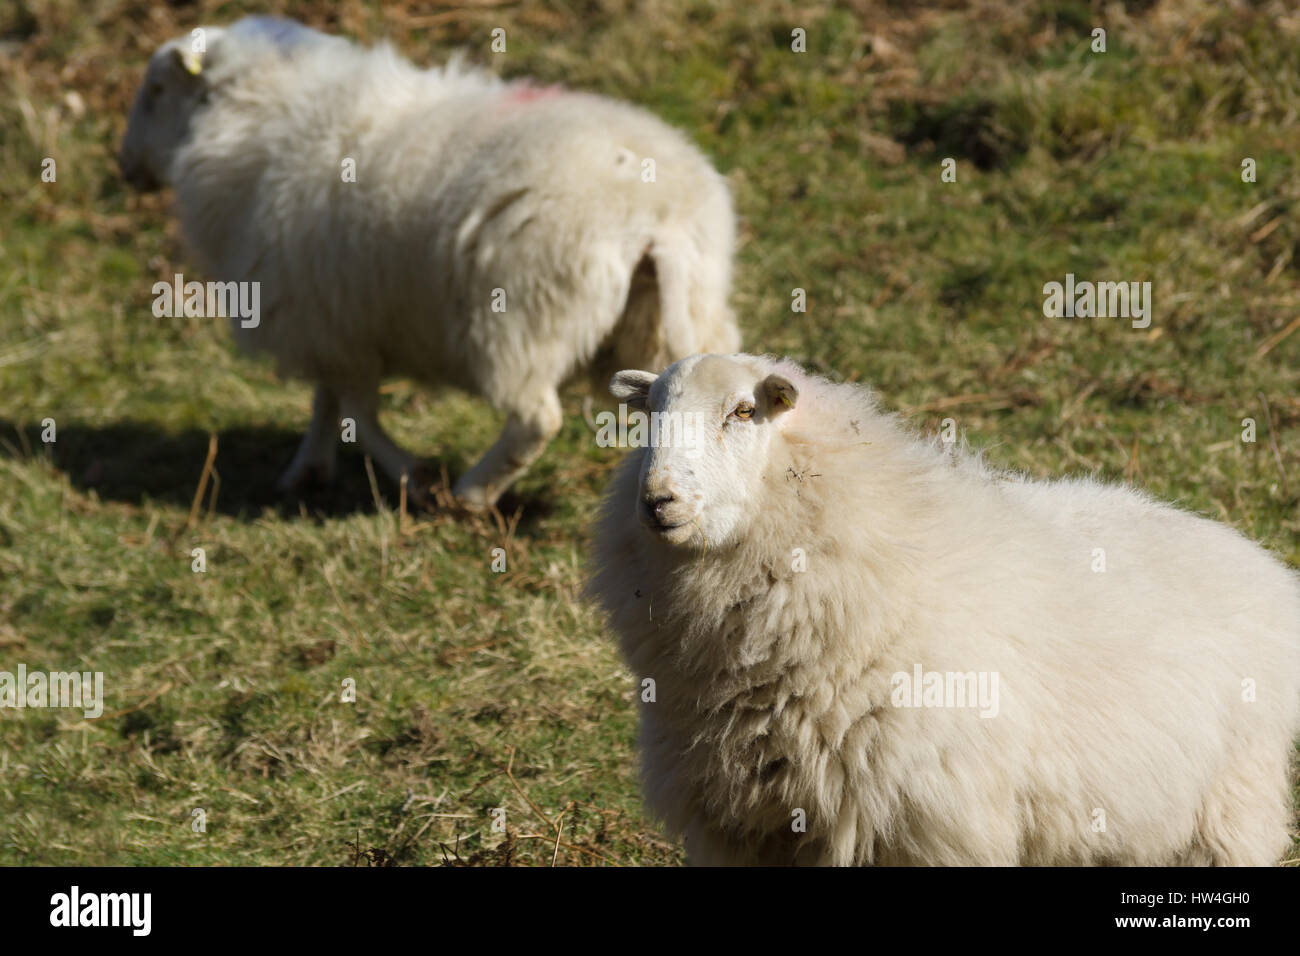 Welsh mountain ovejas Ovejas un hardy raza adaptada a las duras condiciones de montaña y colina rangos de Gales mantiene generalmente al aire libre durante todo el año Foto de stock